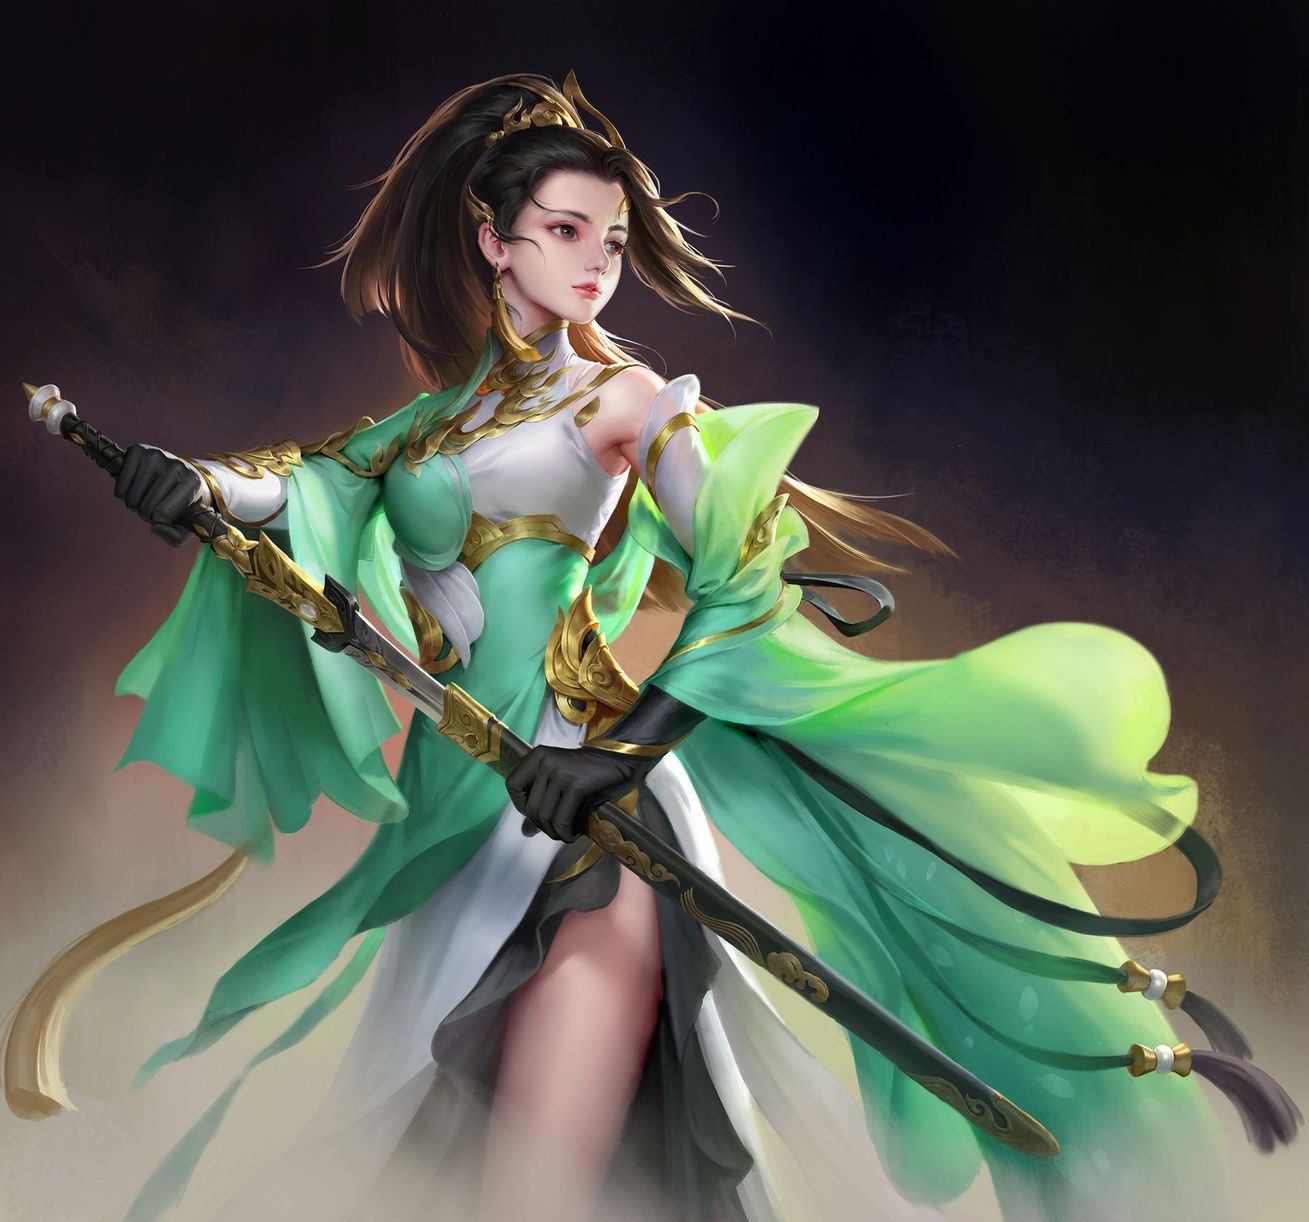 Beautiful girl with sword: Original anime characters (Artist: Wenfei ye)